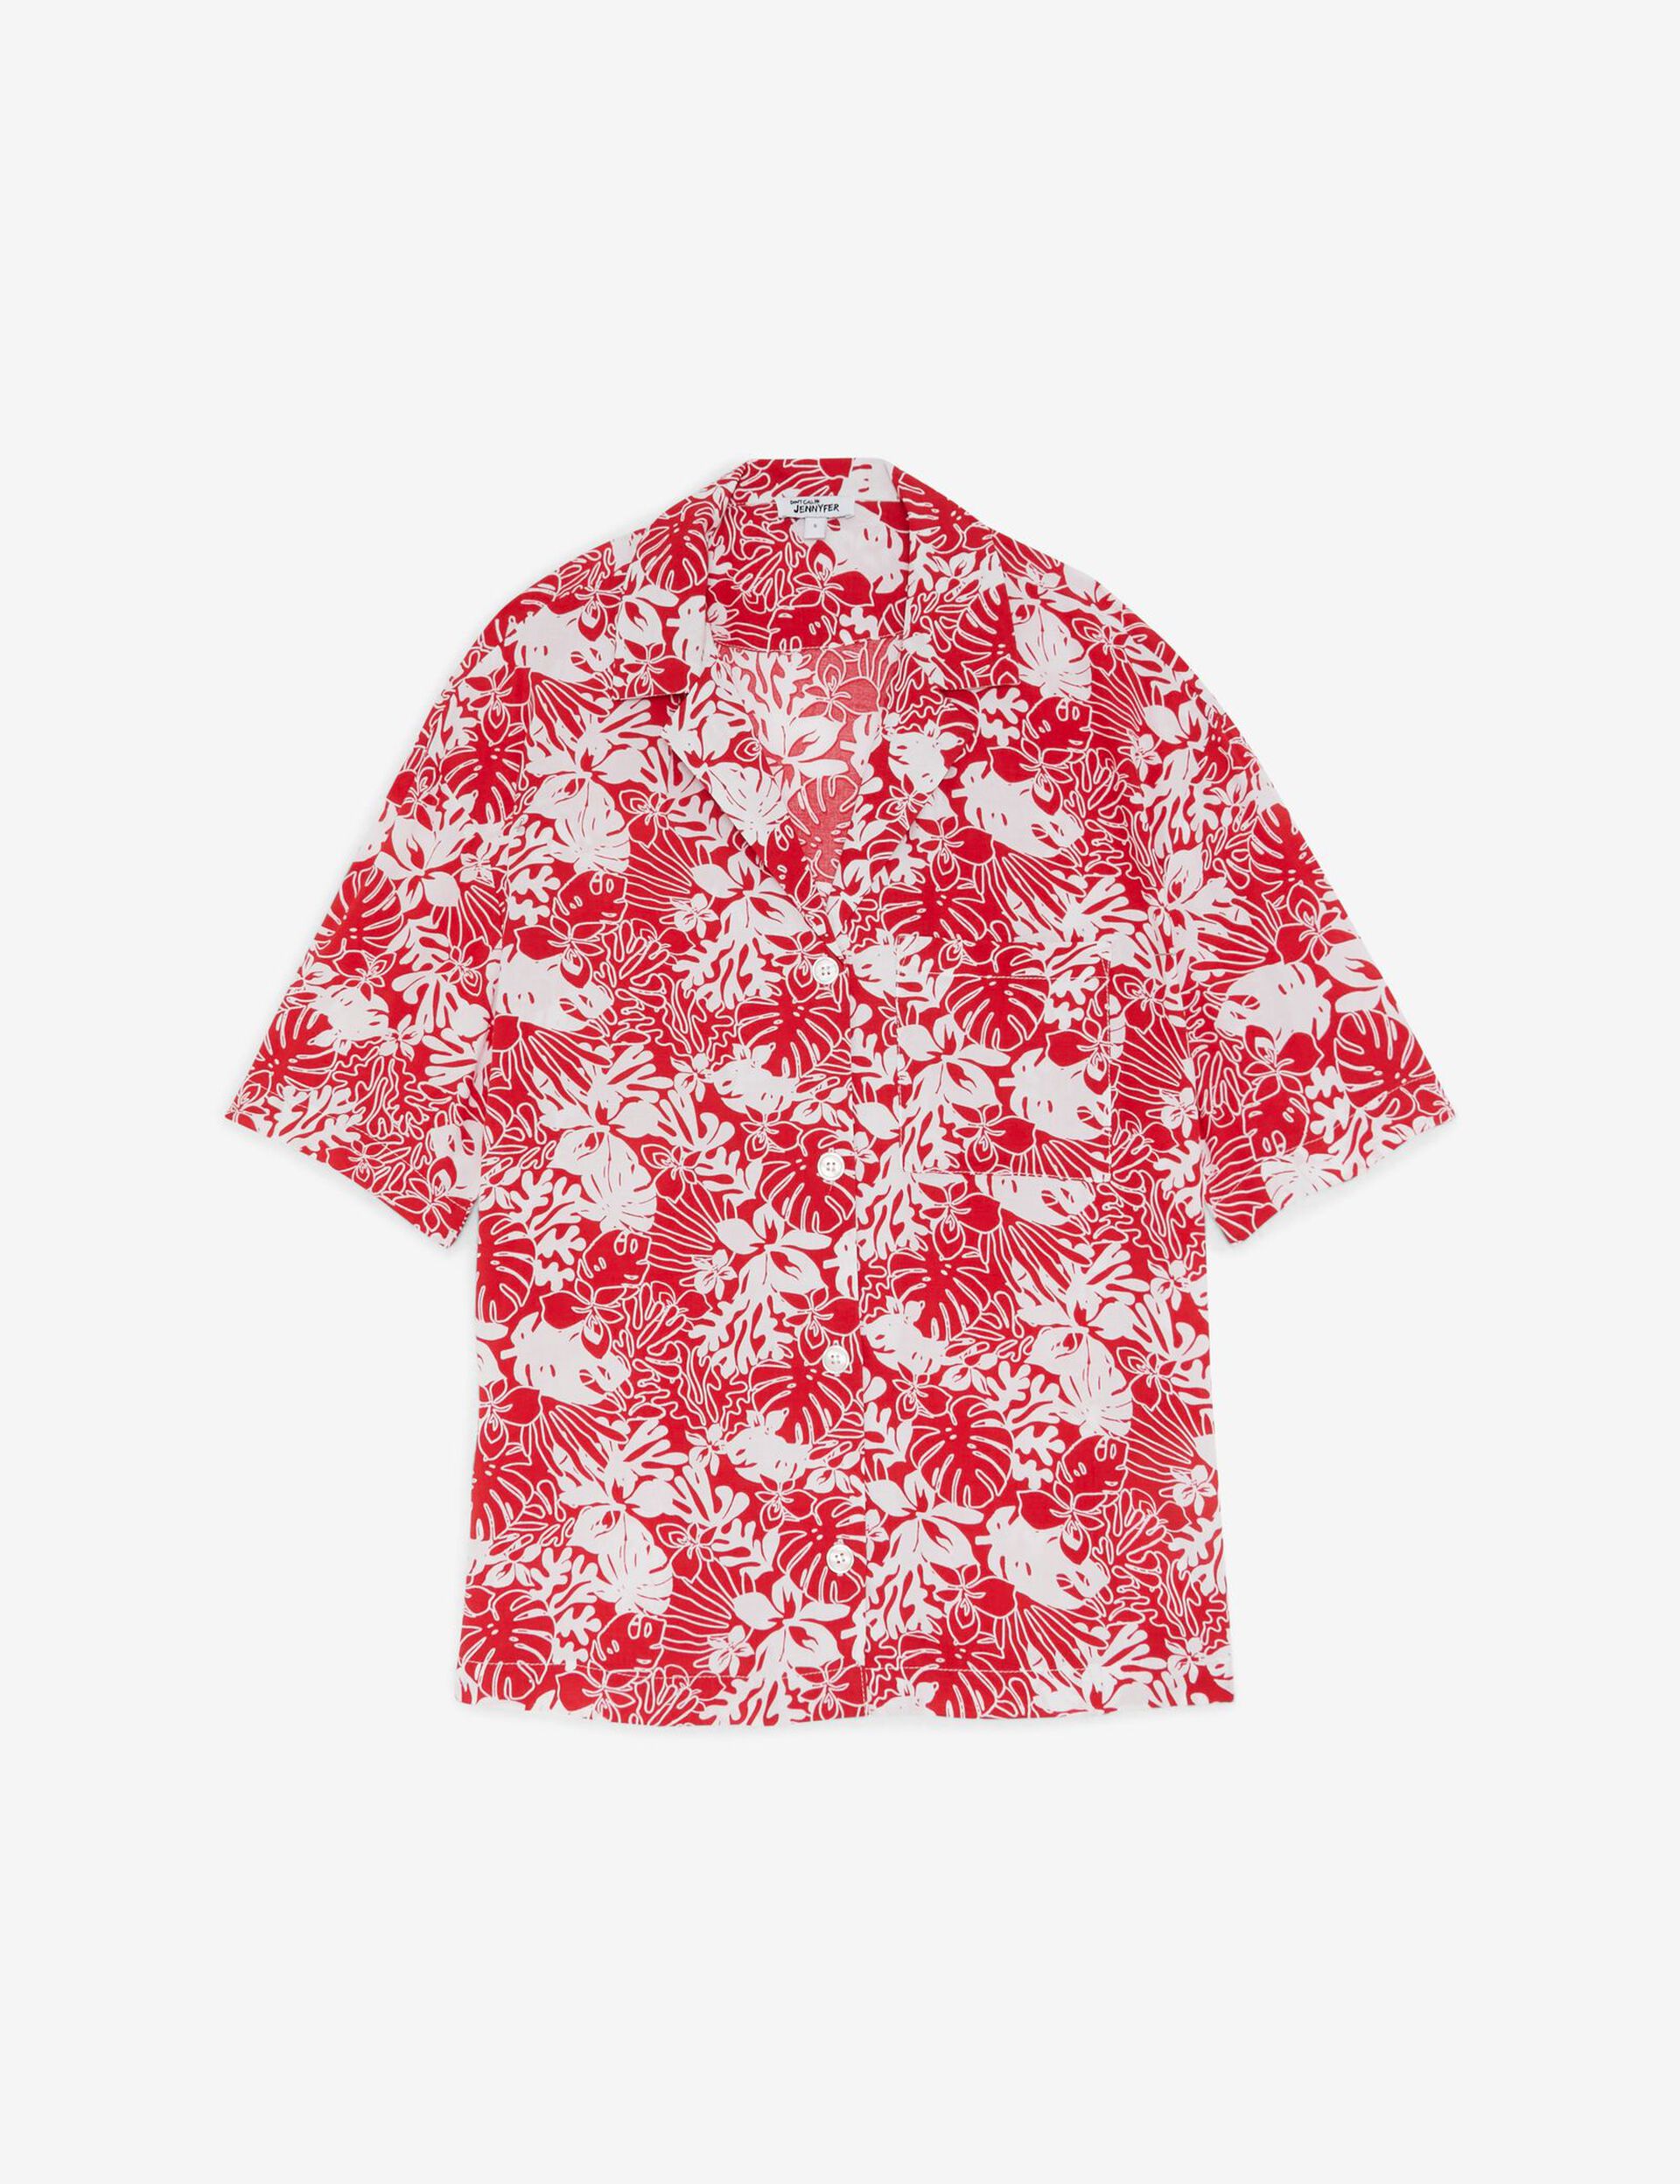 Chemise oversize blanche et rouge imprimée fleurs 